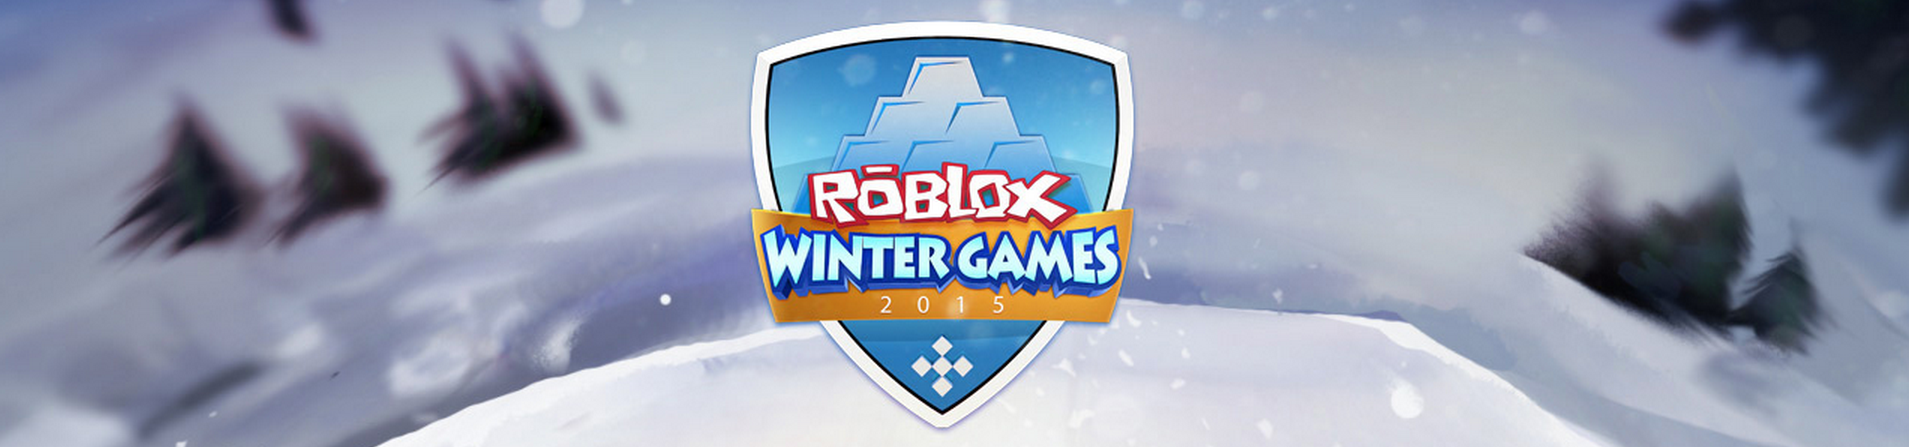 Winter Games 2015 Roblox Wikia Fandom